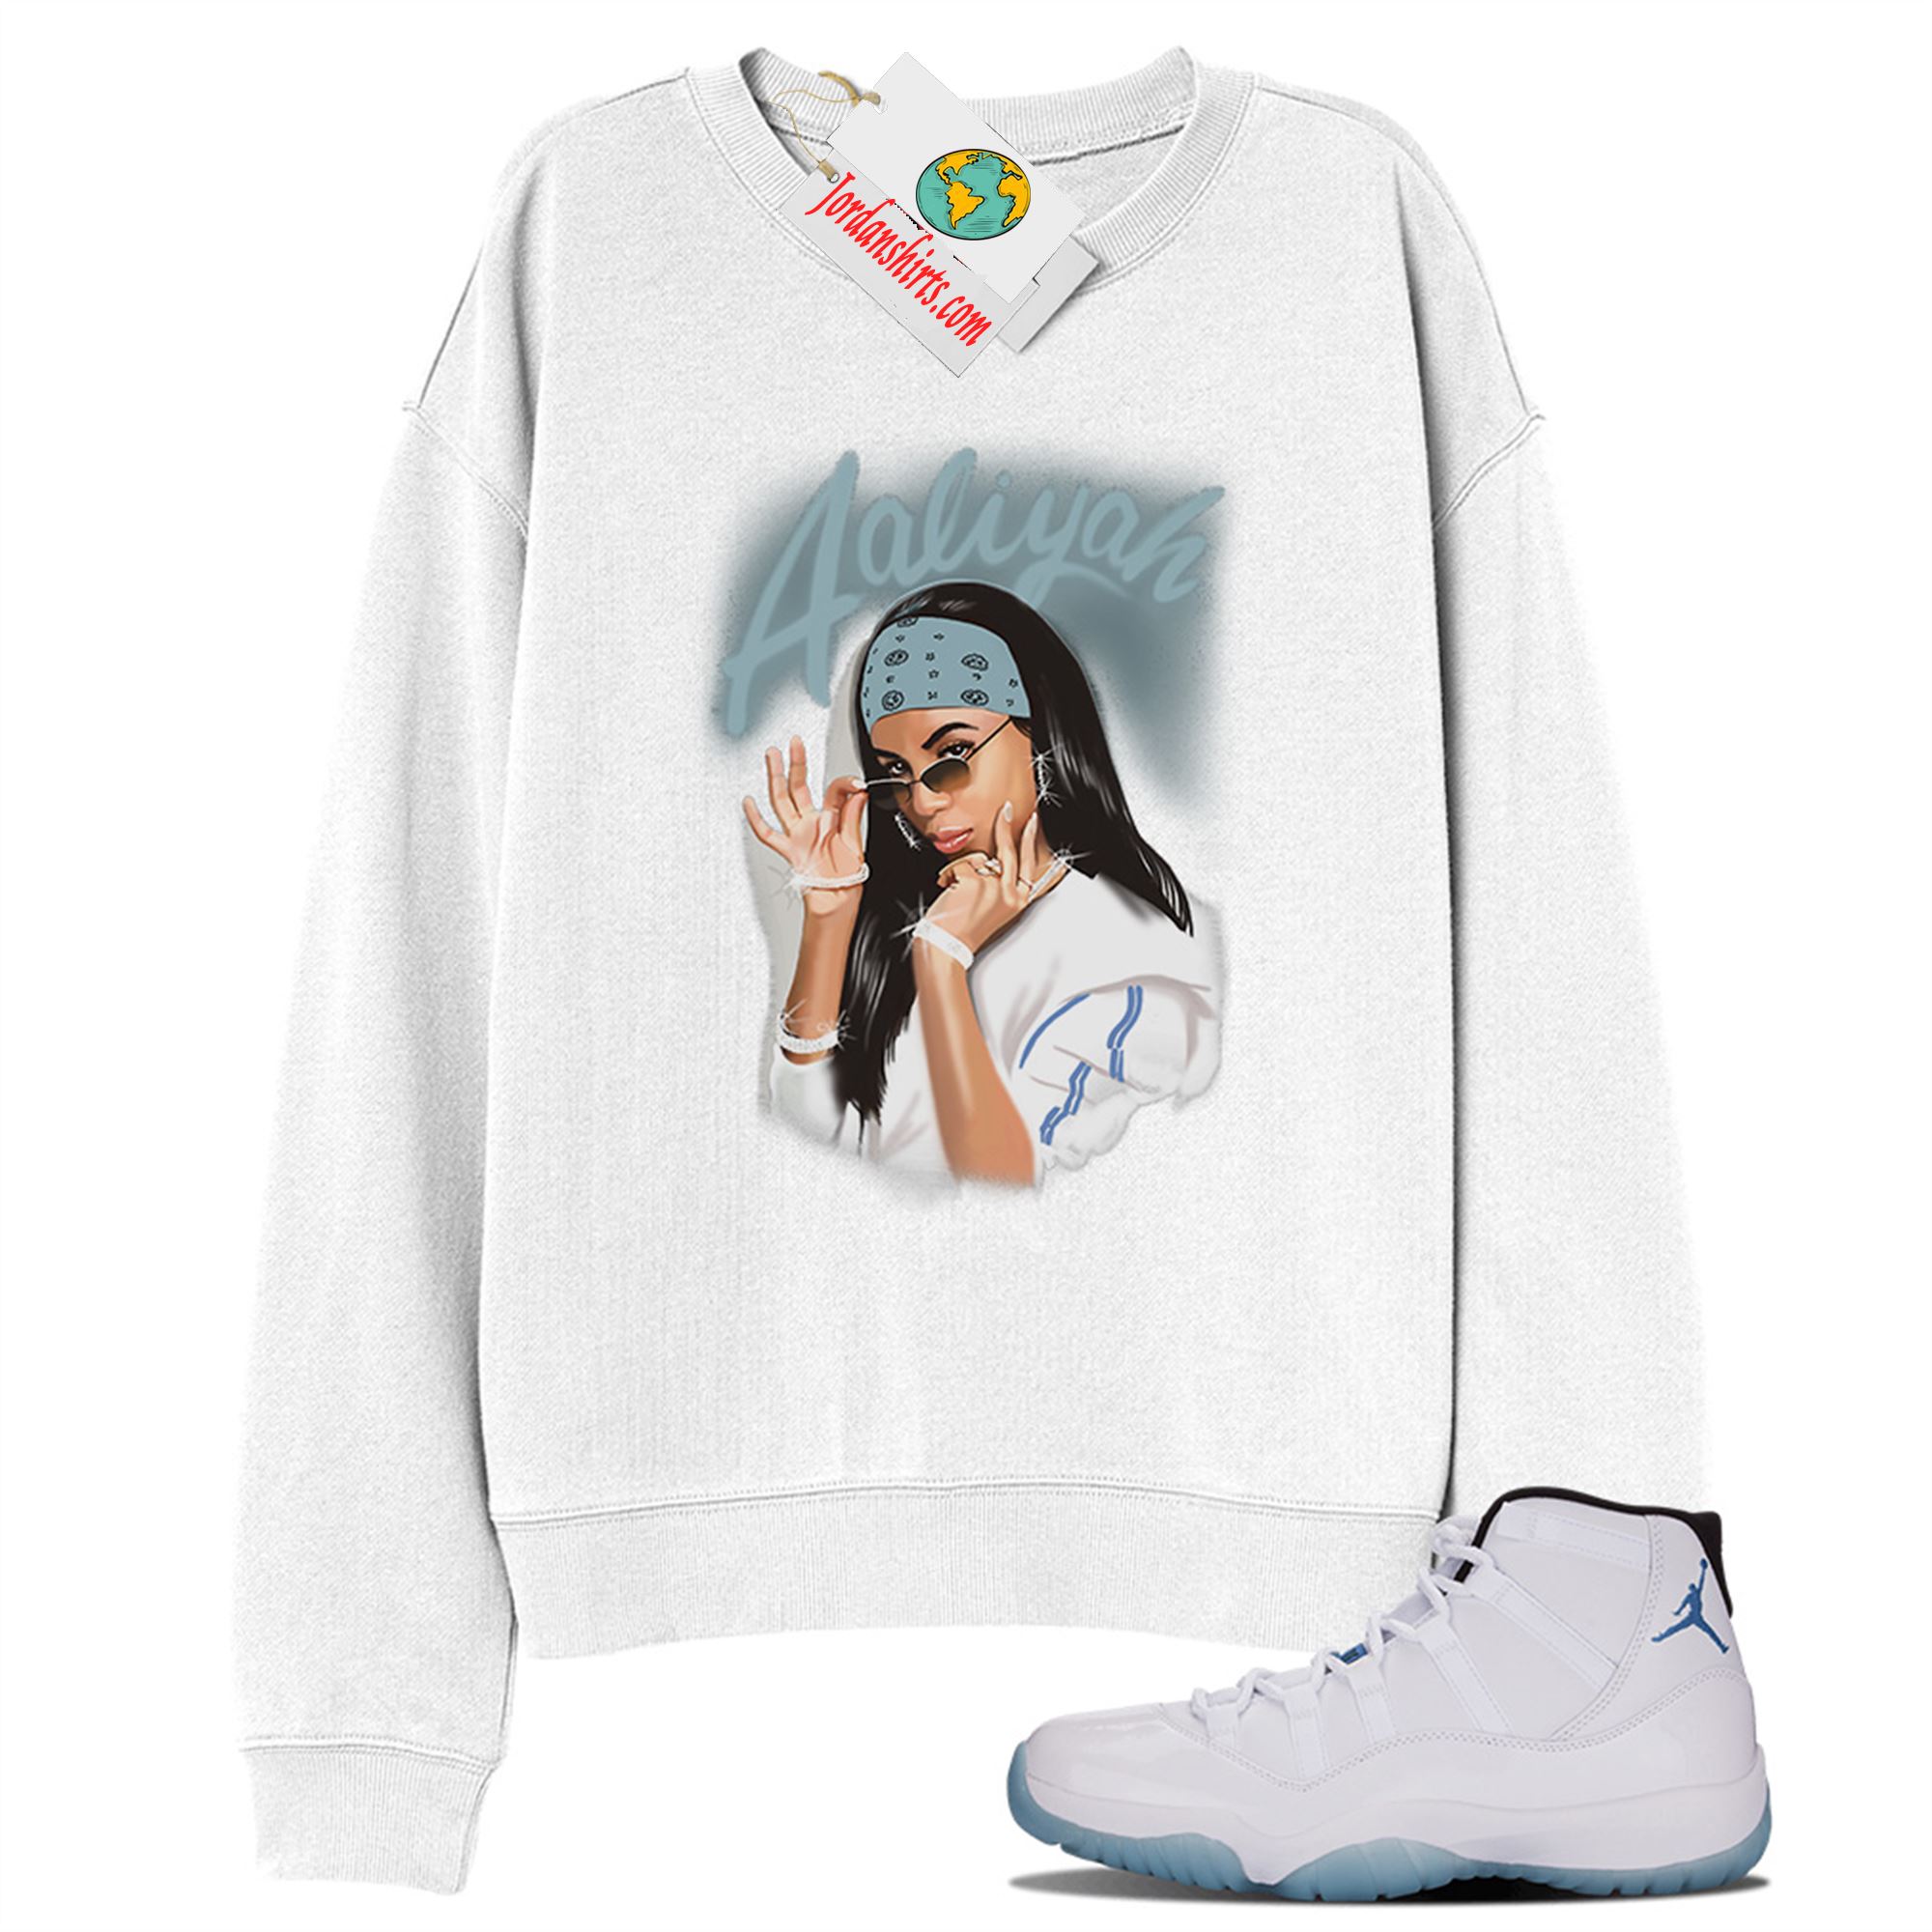 Jordan 11 Sweatshirt, Aaliyah Airbrush White Sweatshirt Air Jordan 11 Legend Blue 11s Plus Size Up To 5xl